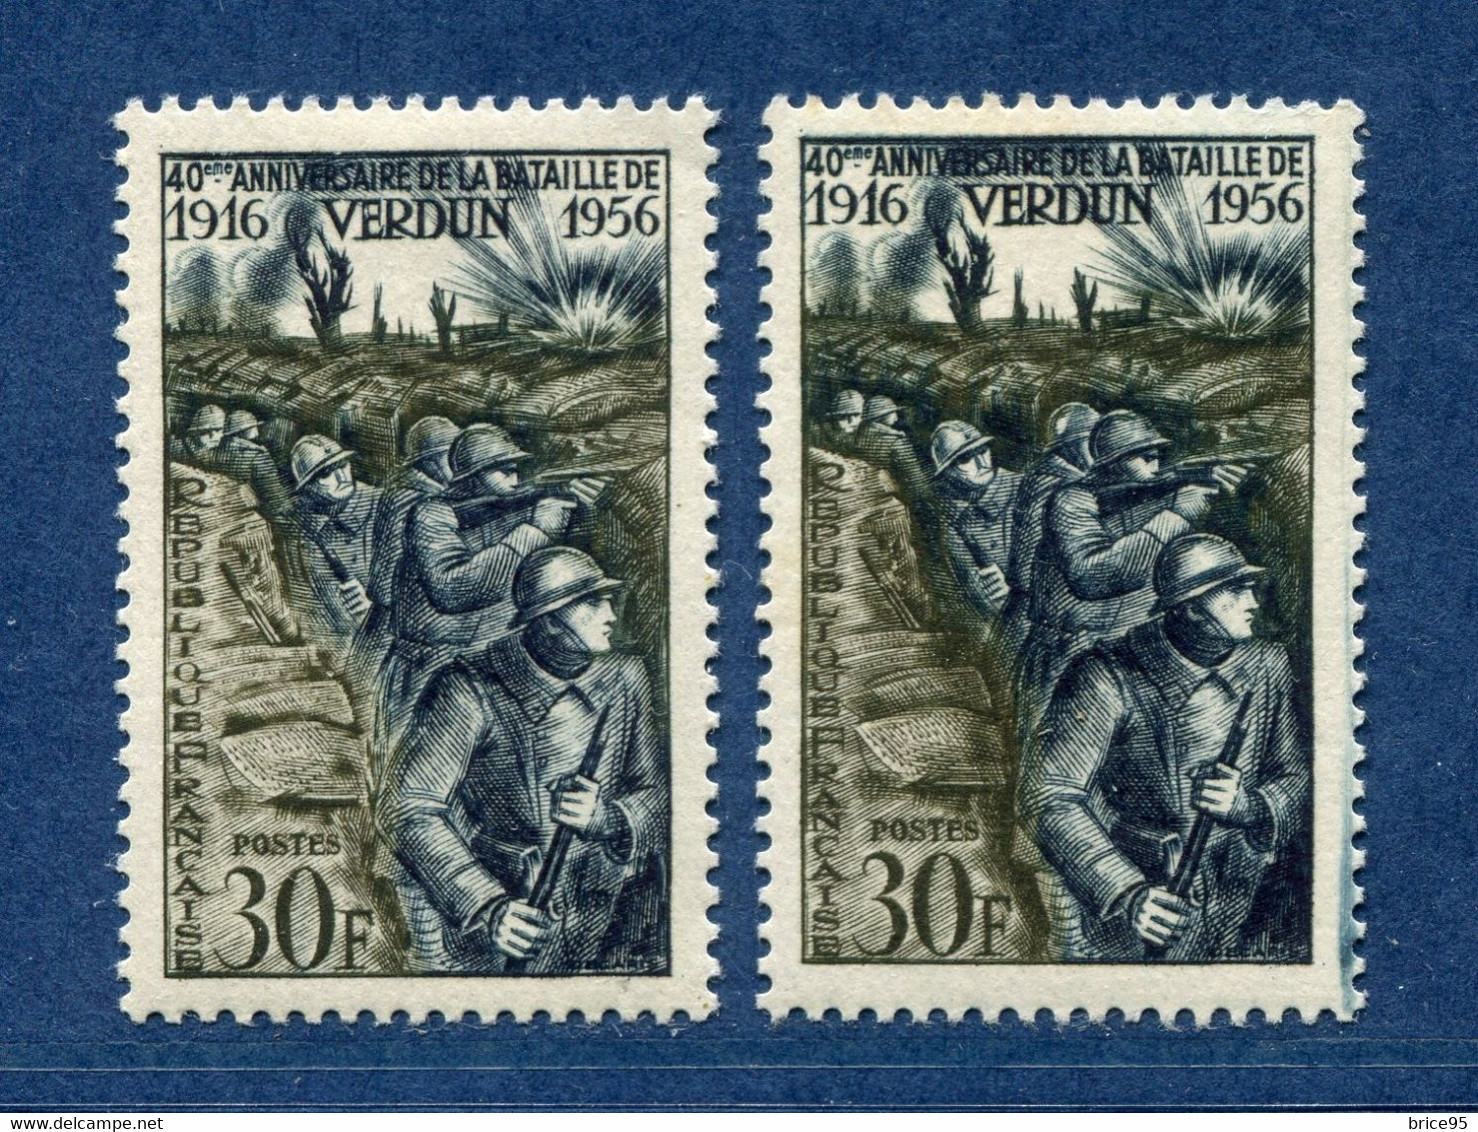 ⭐ France - Variété - YT N° 1053 - Couleurs - Pétouille - Neuf Sans Charnière - 1956 ⭐ - Unused Stamps